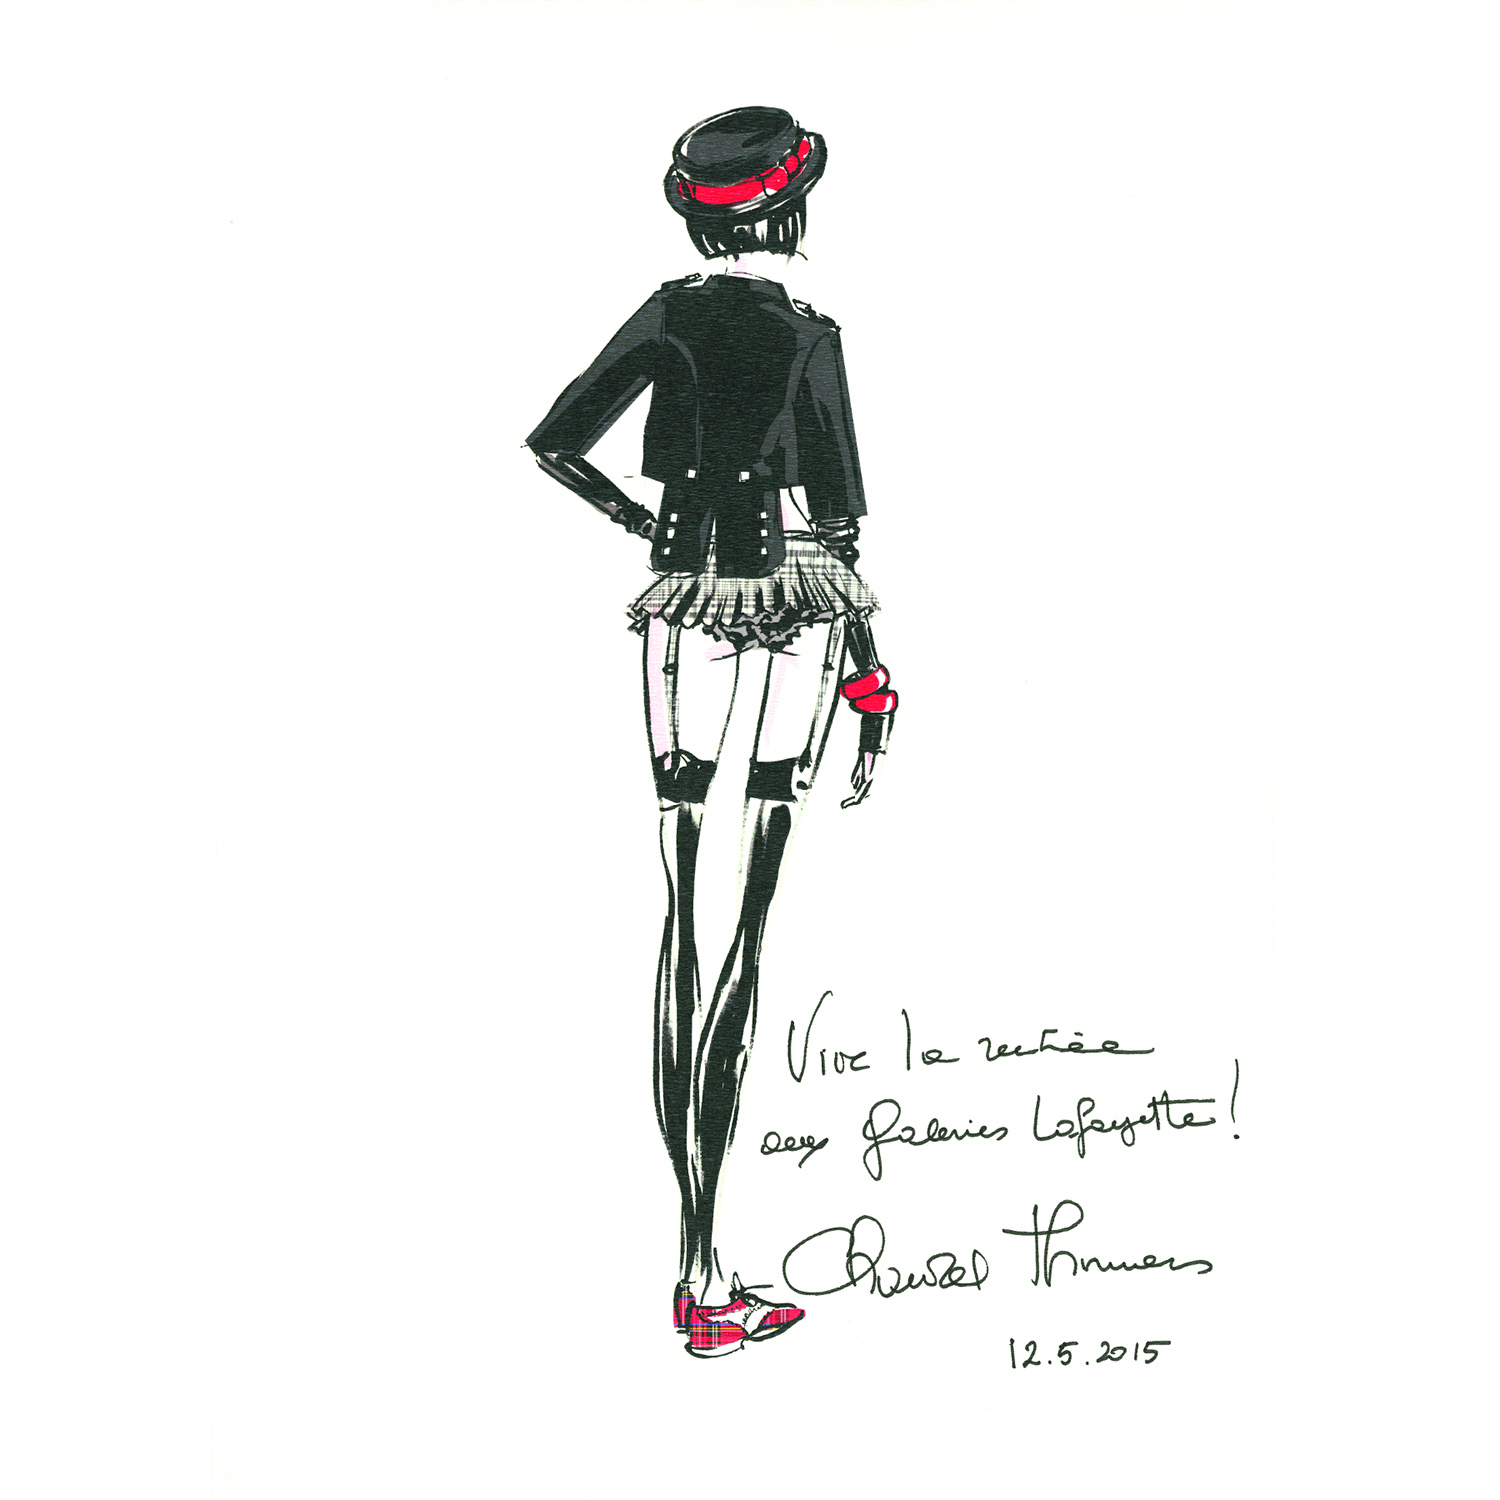 法國巴黎拉法葉百貨邀集時尚設計師定義「新時髦」_創作手稿10月拍賣Chantal_thomass2.jpg